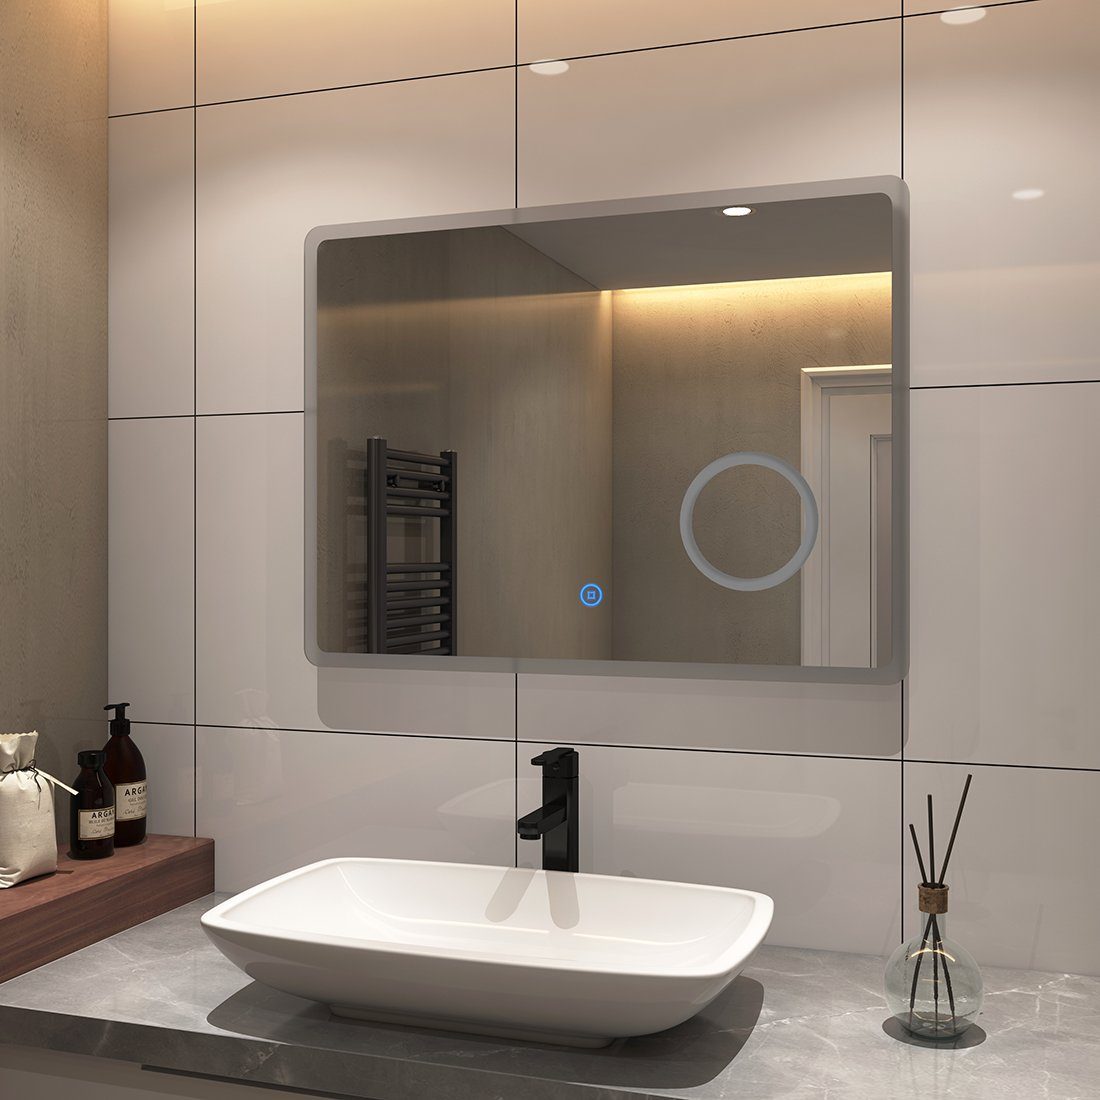 S'AFIELINA Badspiegel LED mit Rasierspiegel Touchschalter,Beschlagfrei,3-fach Vergrößerung,Kaltweiß Badspiegel Beleuchtung 6500K Wandspiegel